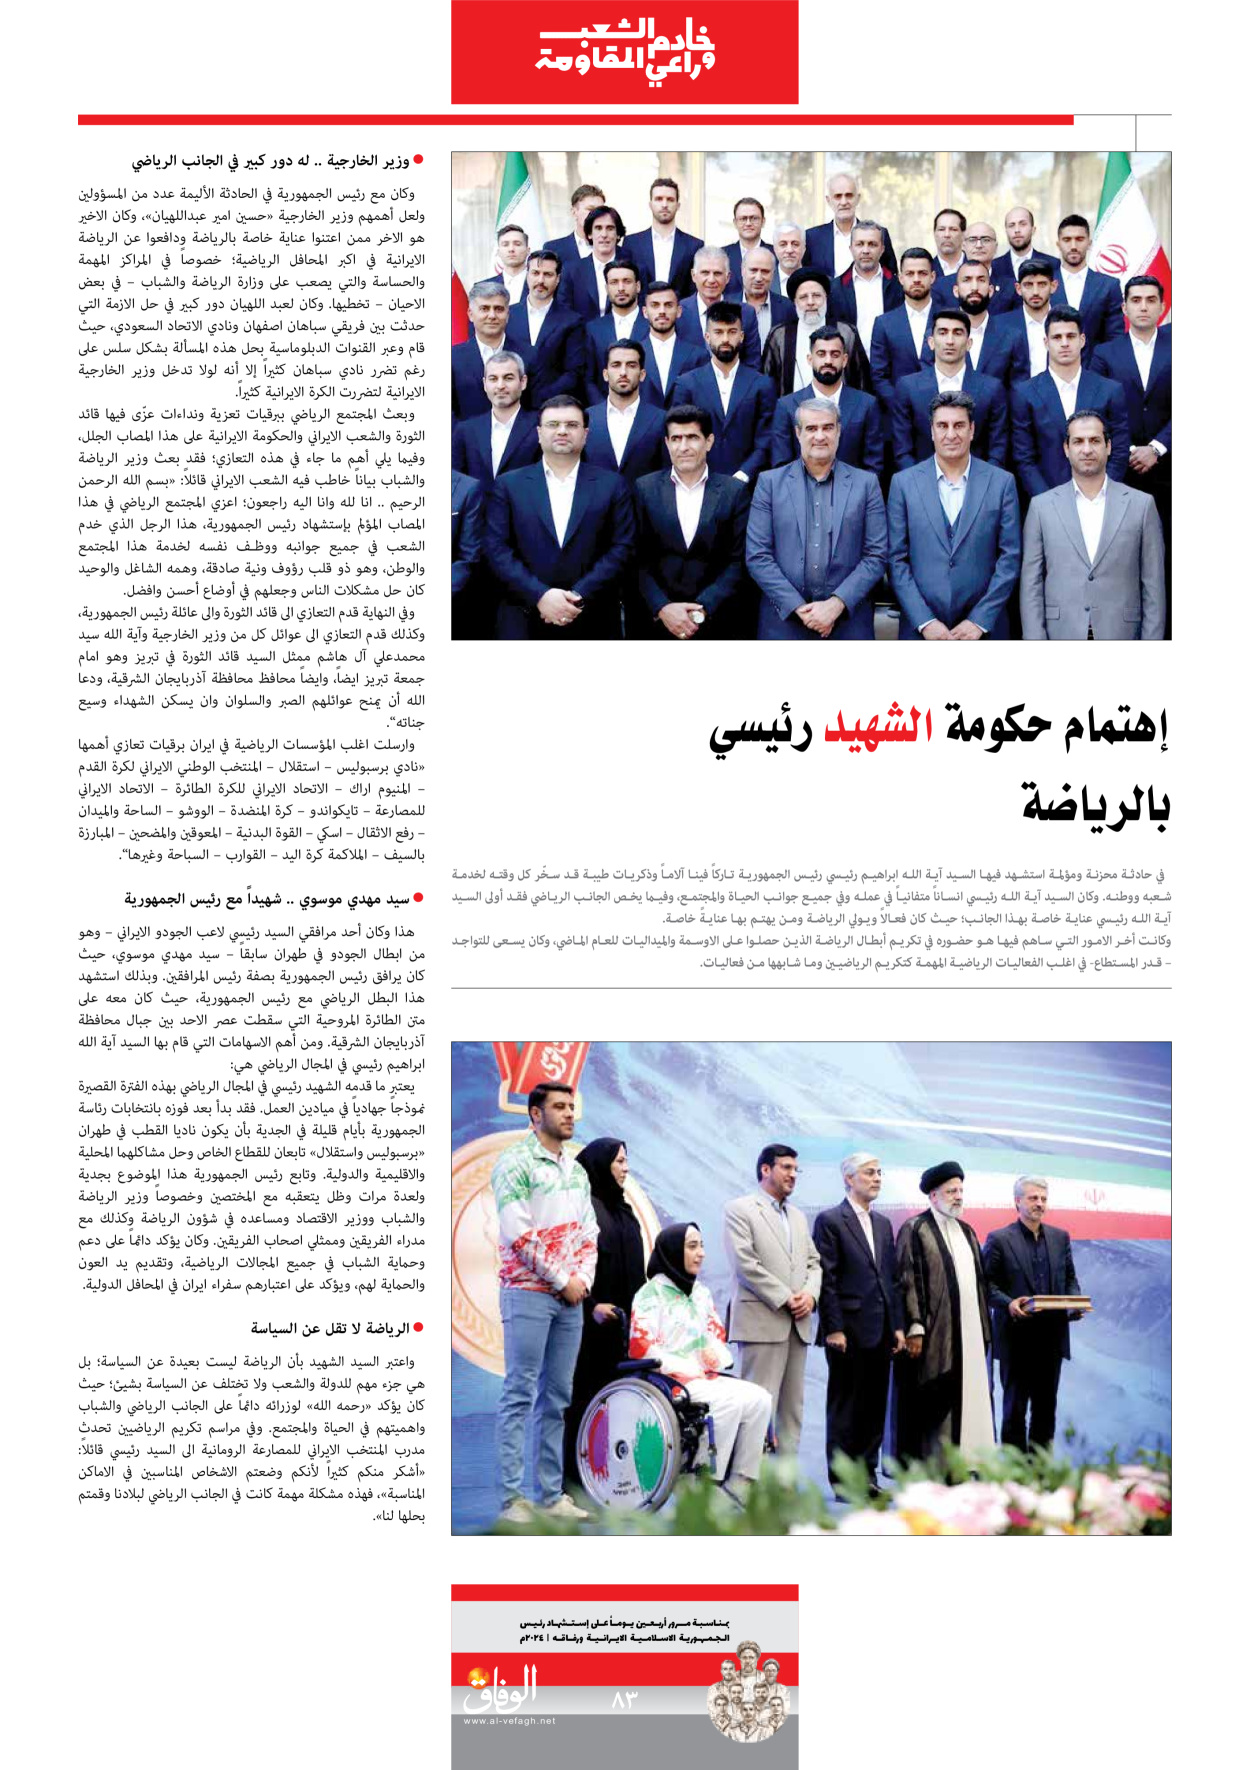 صحیفة ایران الدولیة الوفاق - ملحق ویژه نامه چهلم شهید رییسی - ٢٩ يونيو ٢٠٢٤ - الصفحة ۸۳